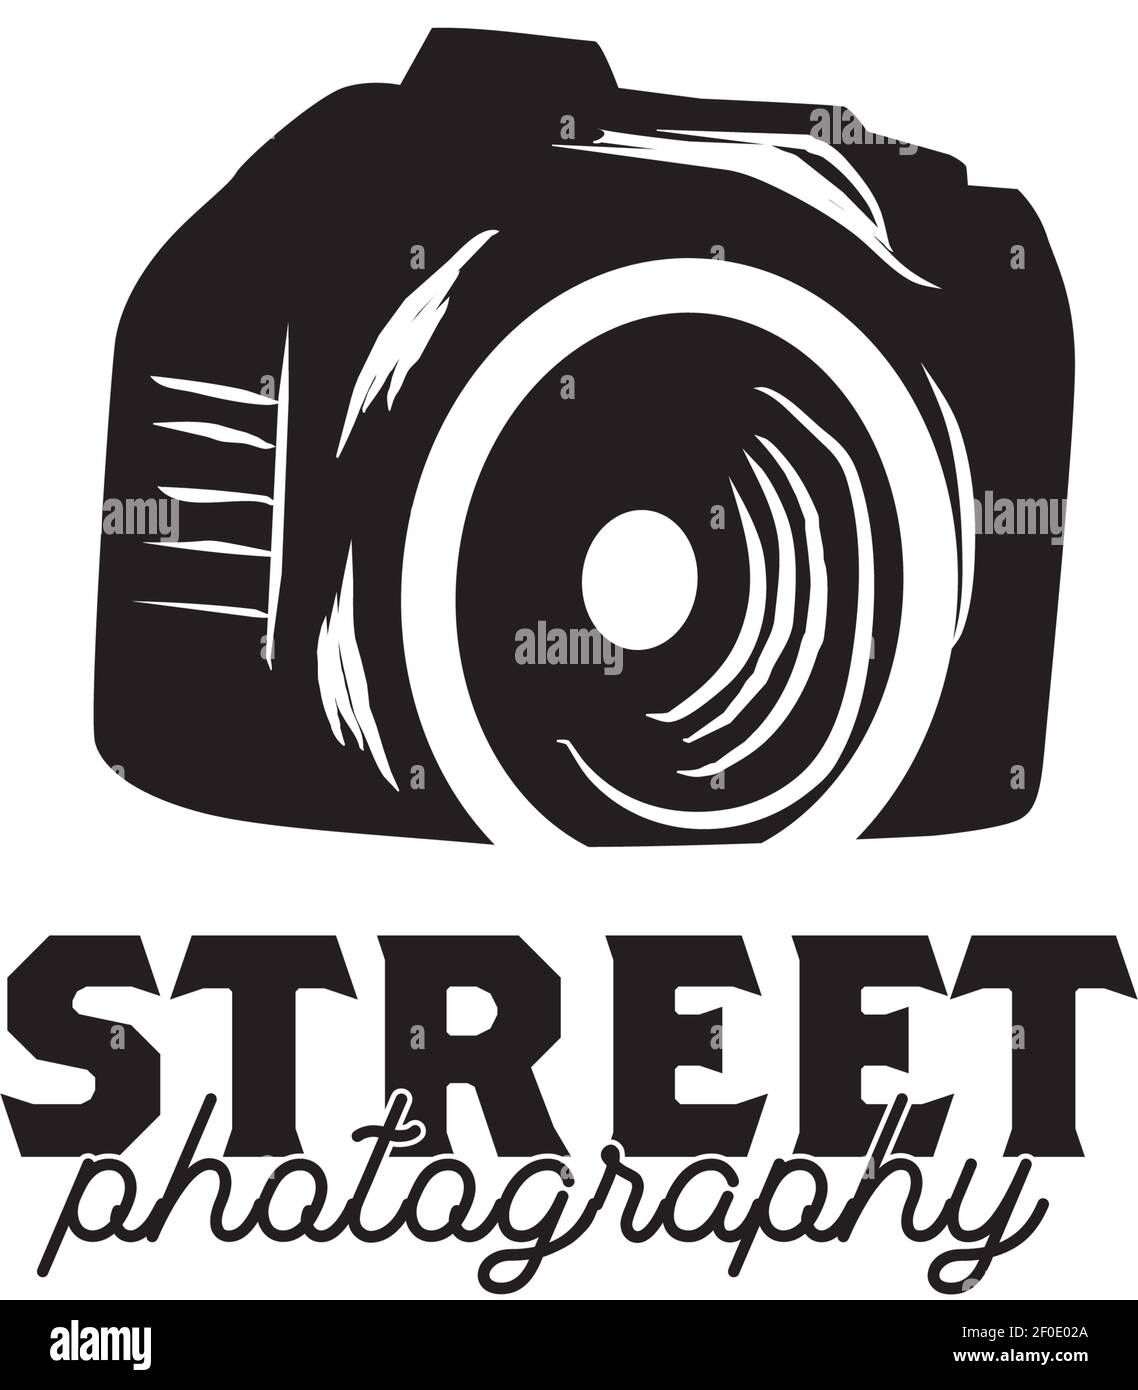 Disegno del logo della fotografia di strada con modello vettoriale dell'icona della fotocamera Illustrazione Vettoriale